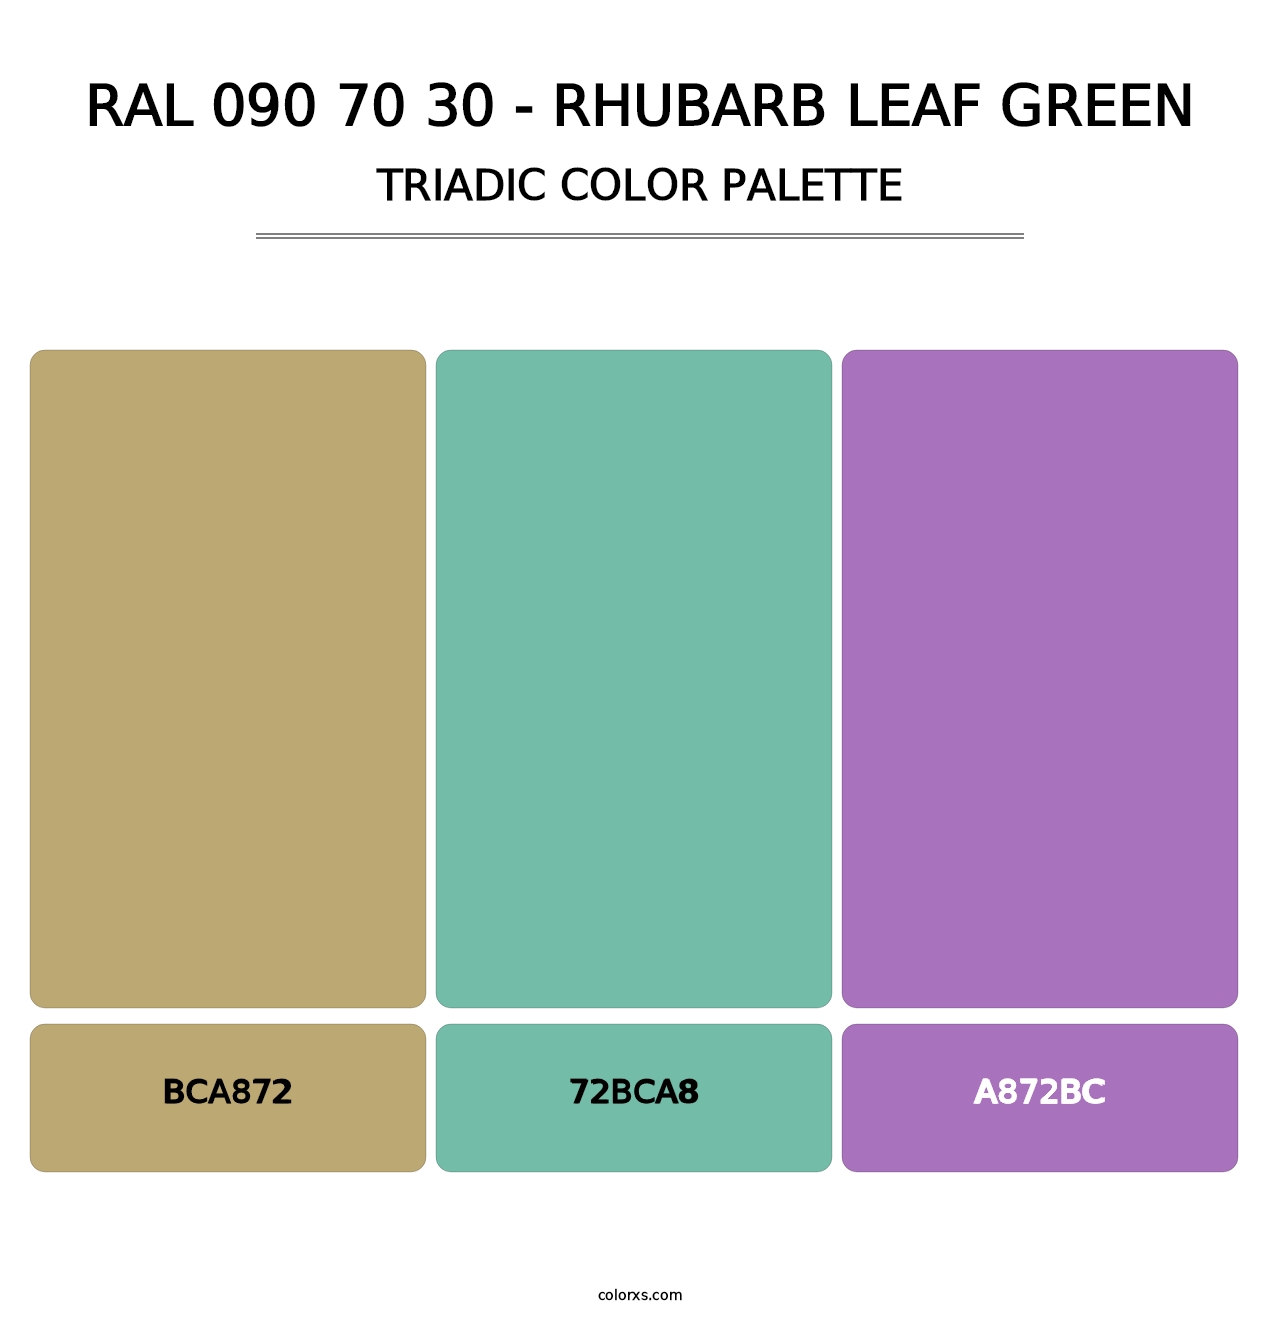 RAL 090 70 30 - Rhubarb Leaf Green - Triadic Color Palette